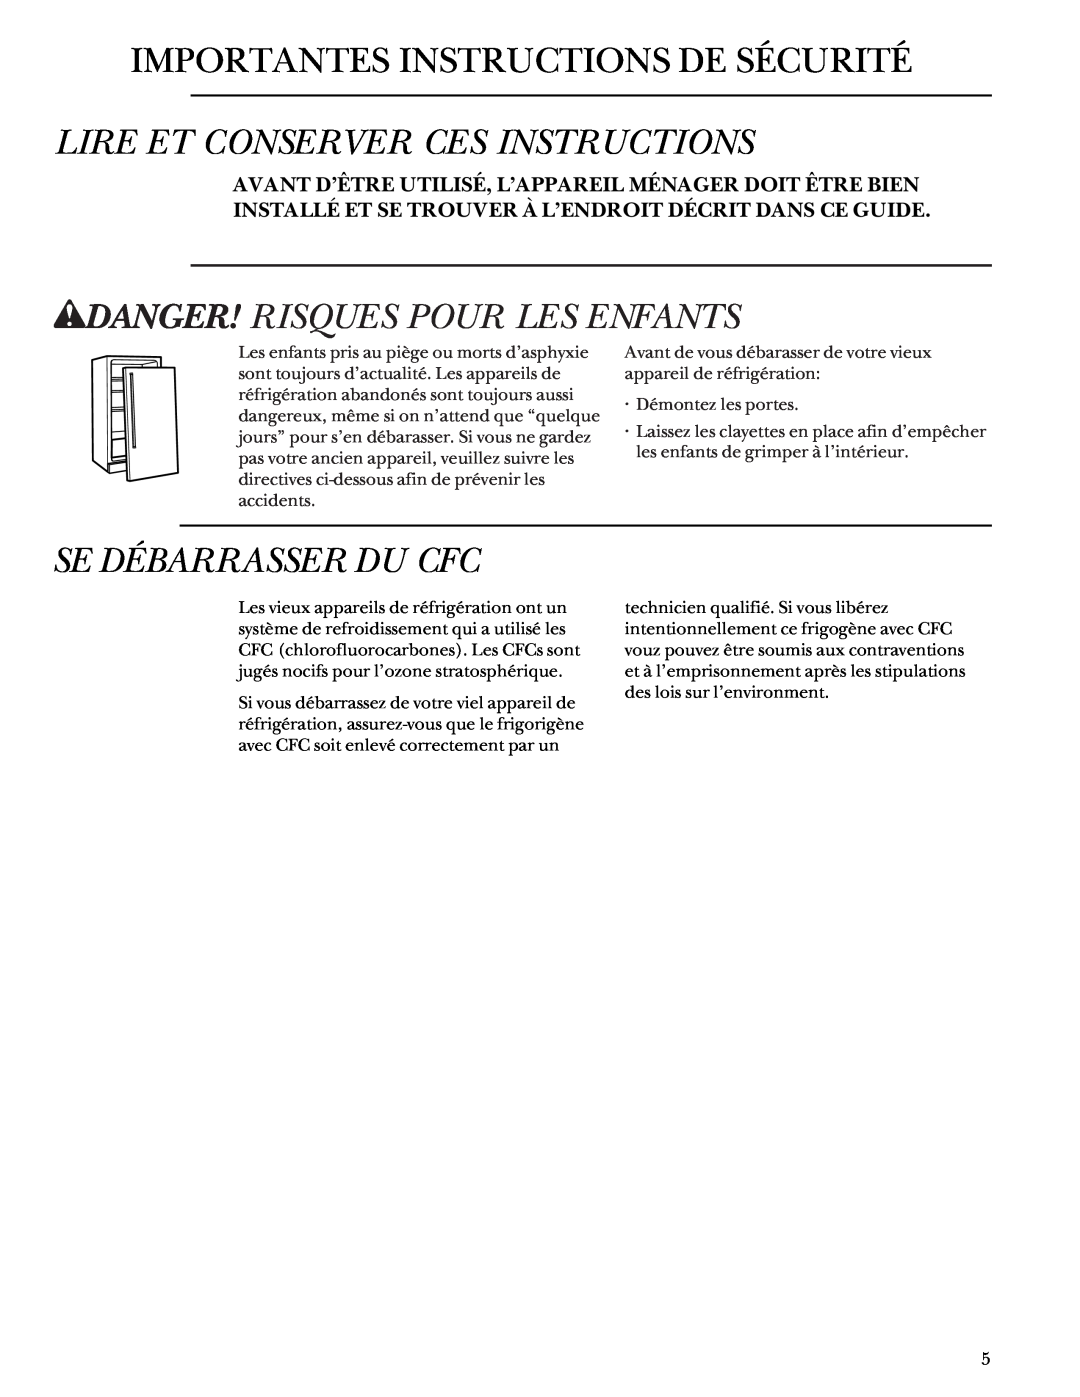 GE Monogram ZDB24 manual Importantes Instructions De Sécurité, Lire Et Conserver Ces Instructions, Se Débarrasser Du Cfc 